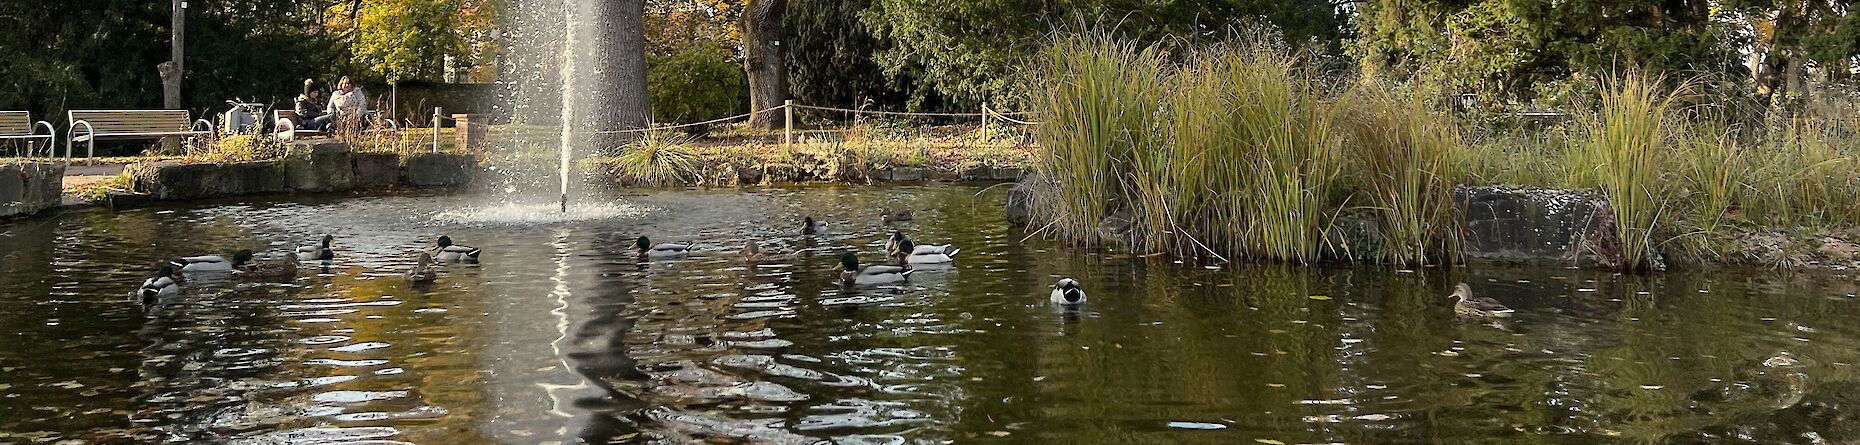 Teich im Verna-Park mit Enten und Wasserfontäne. 2 Frauen sitzen auf einer Bank.